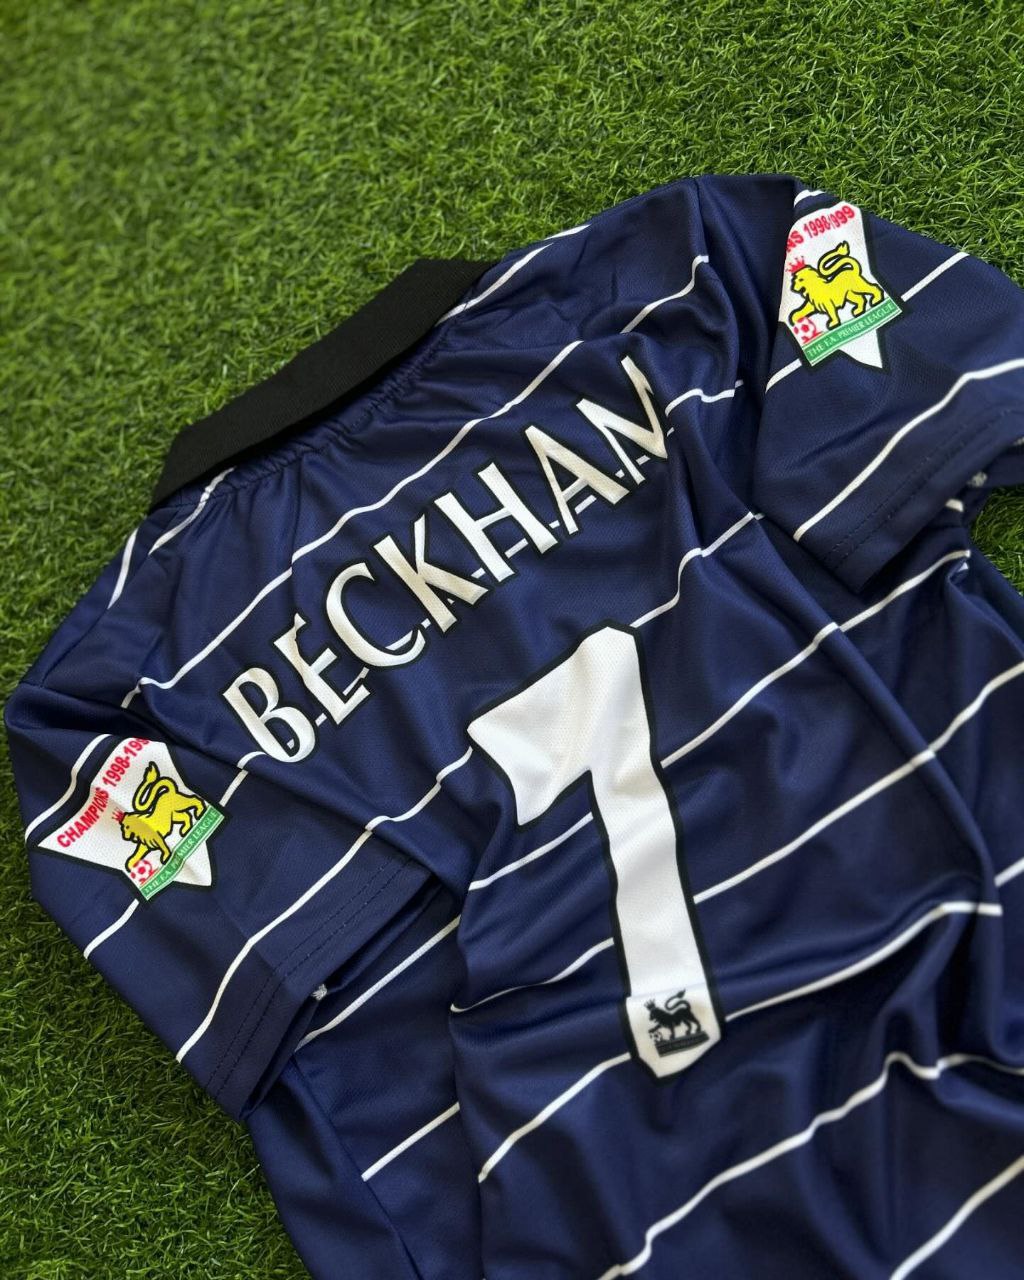 David Beckham Manchester United Nachtblaues Retro-Trikot